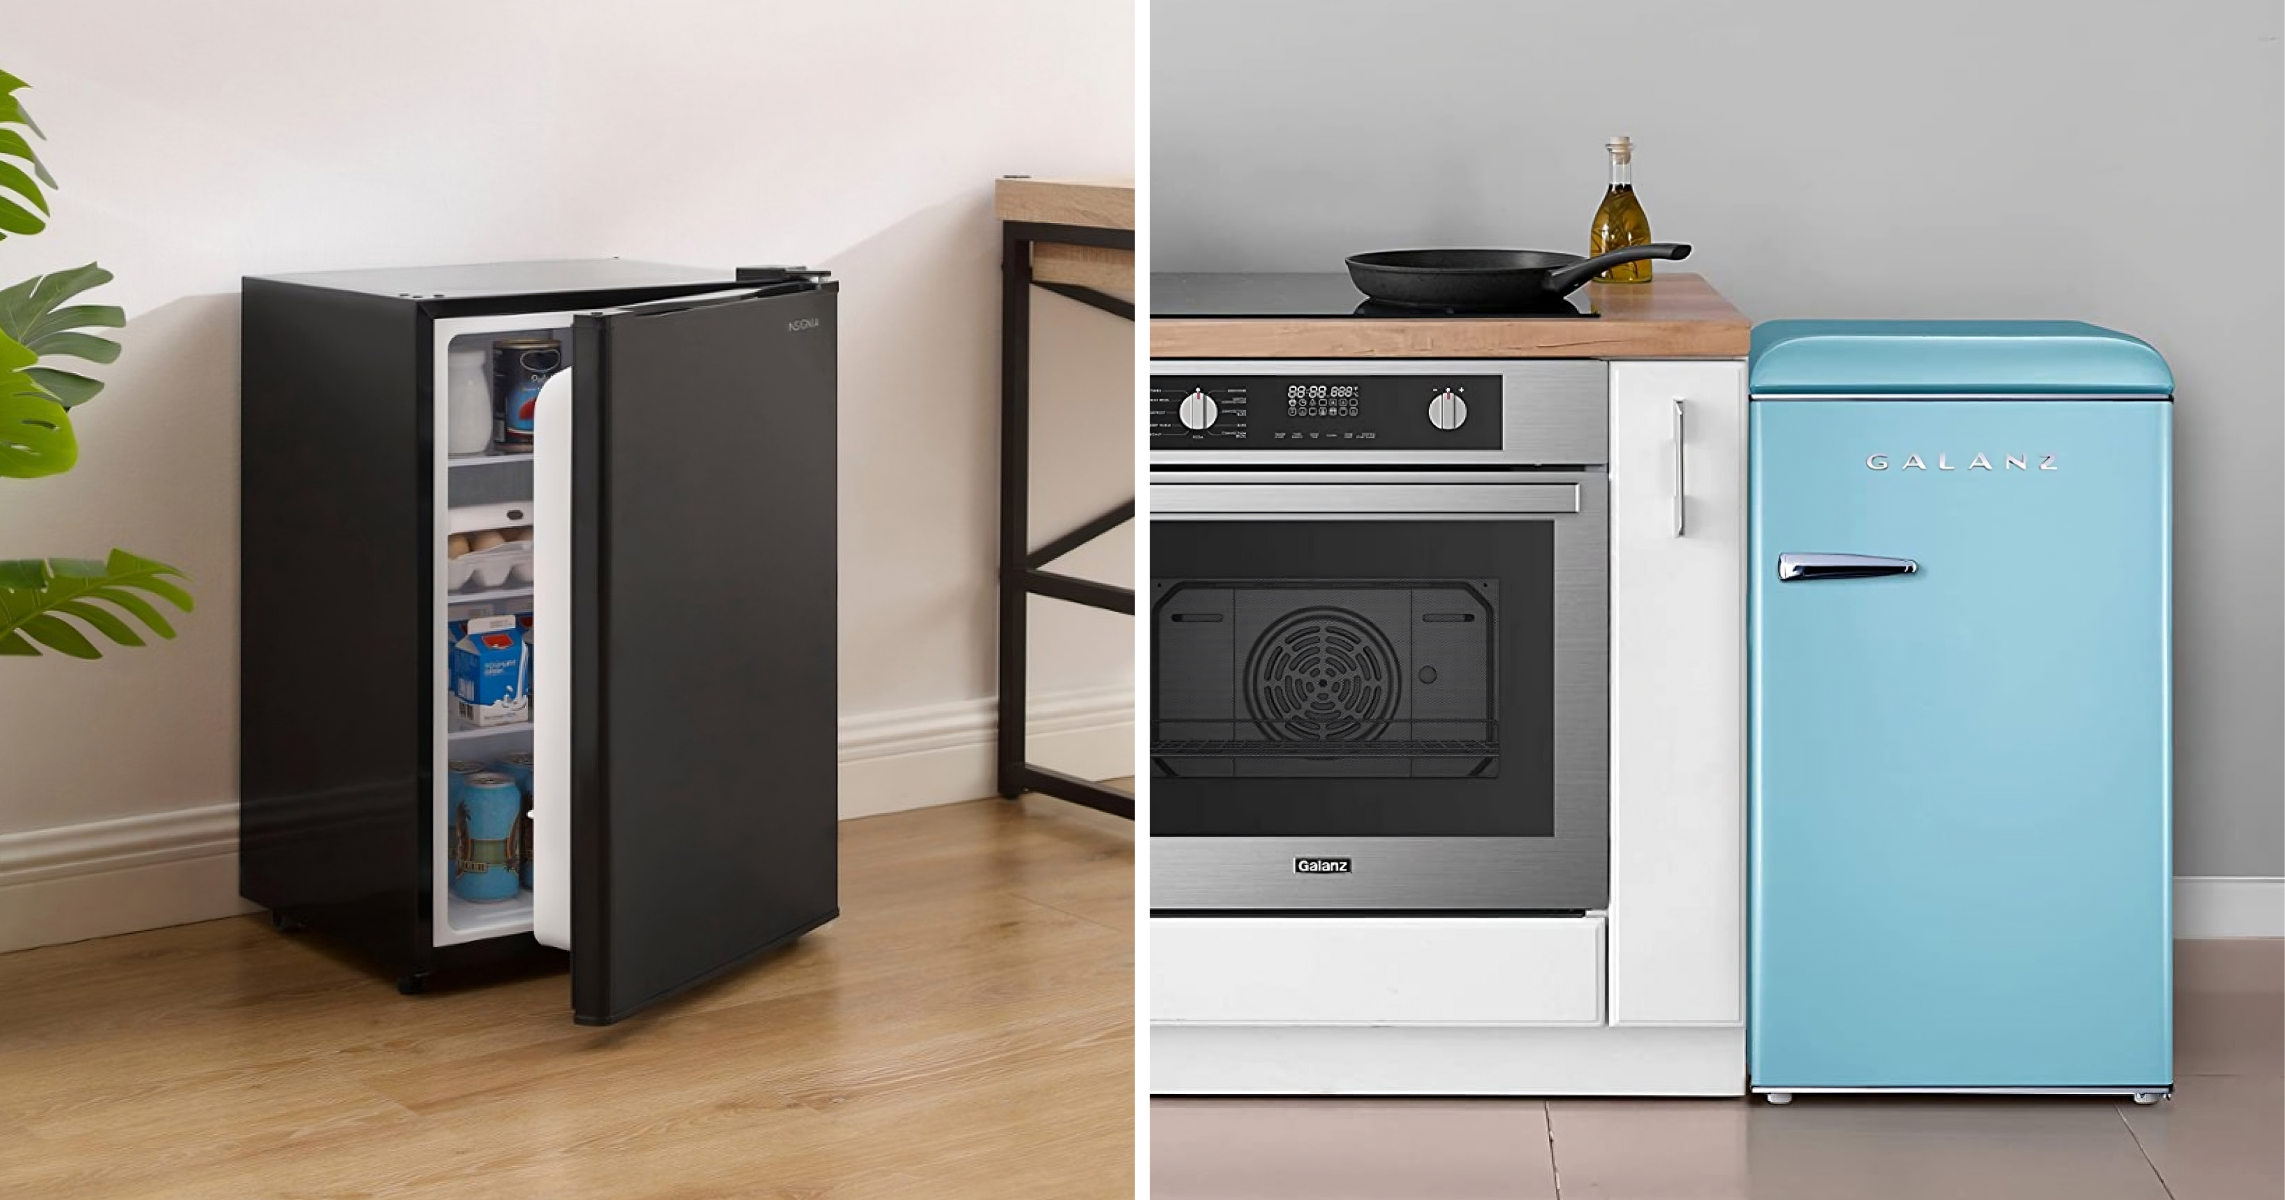 Come un mini-frigo può diventare un elemento di design d'interni - ESALINEA